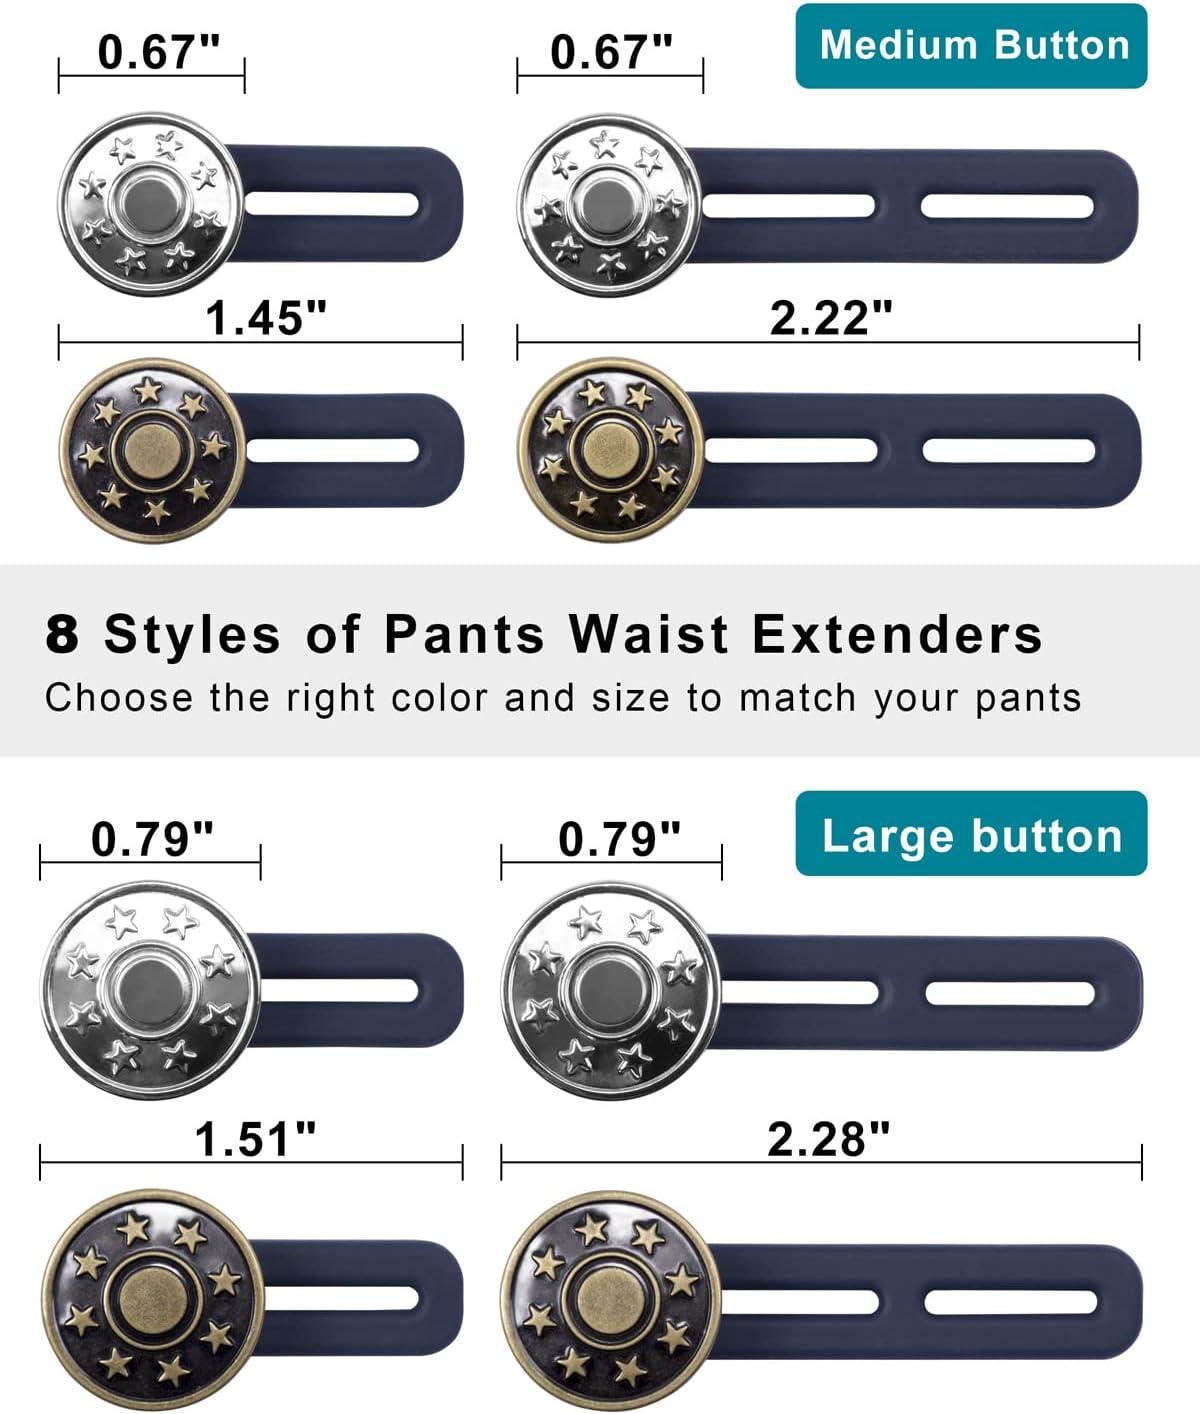 32 Pants Waist Extenders ideas  button extender, collar extenders